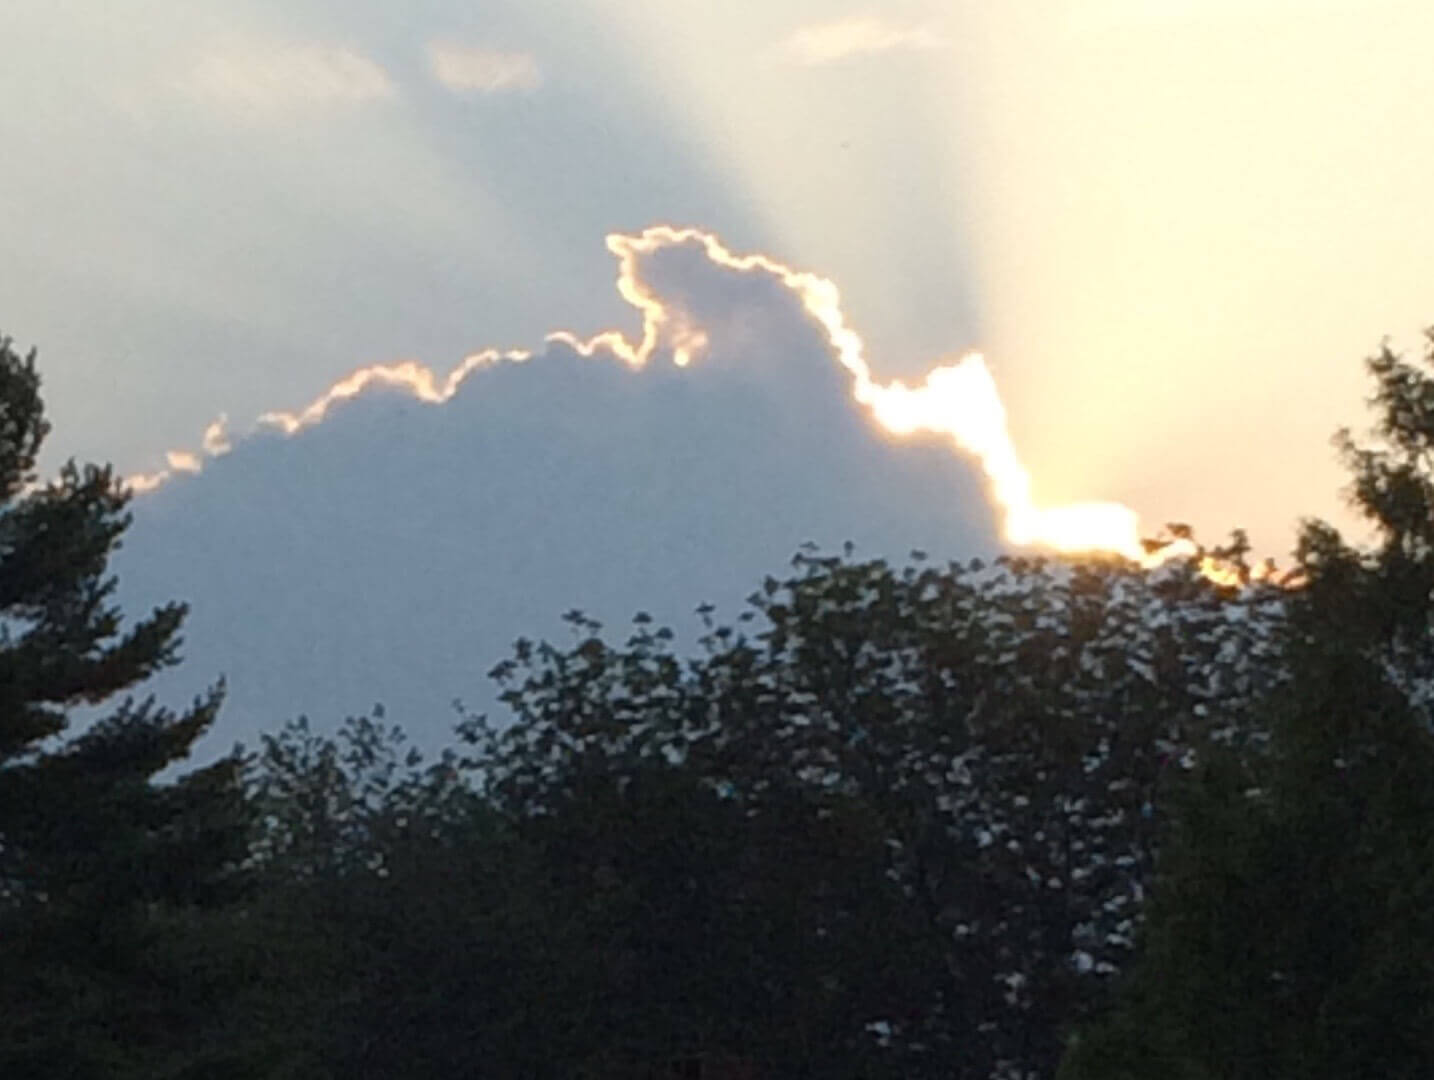 Backlit Cloud at Sunset